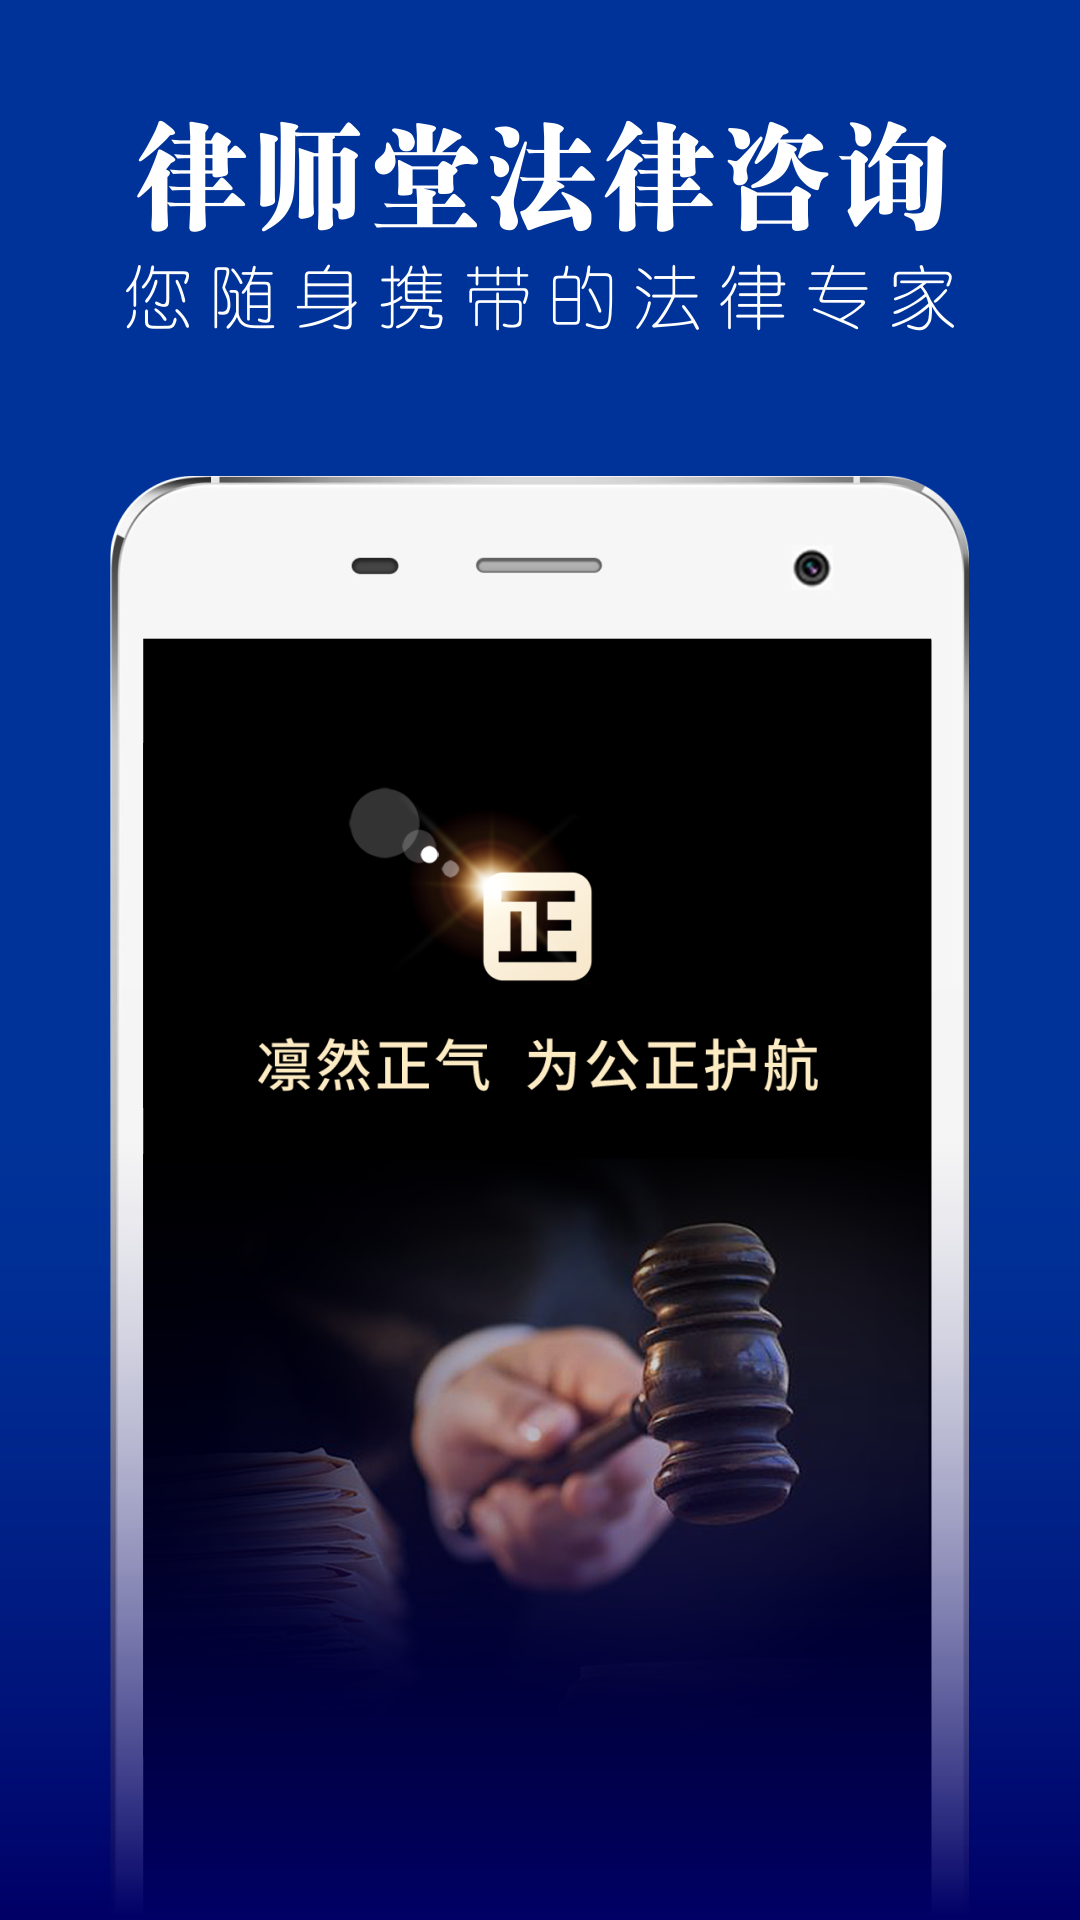 律师堂法律咨询app图1